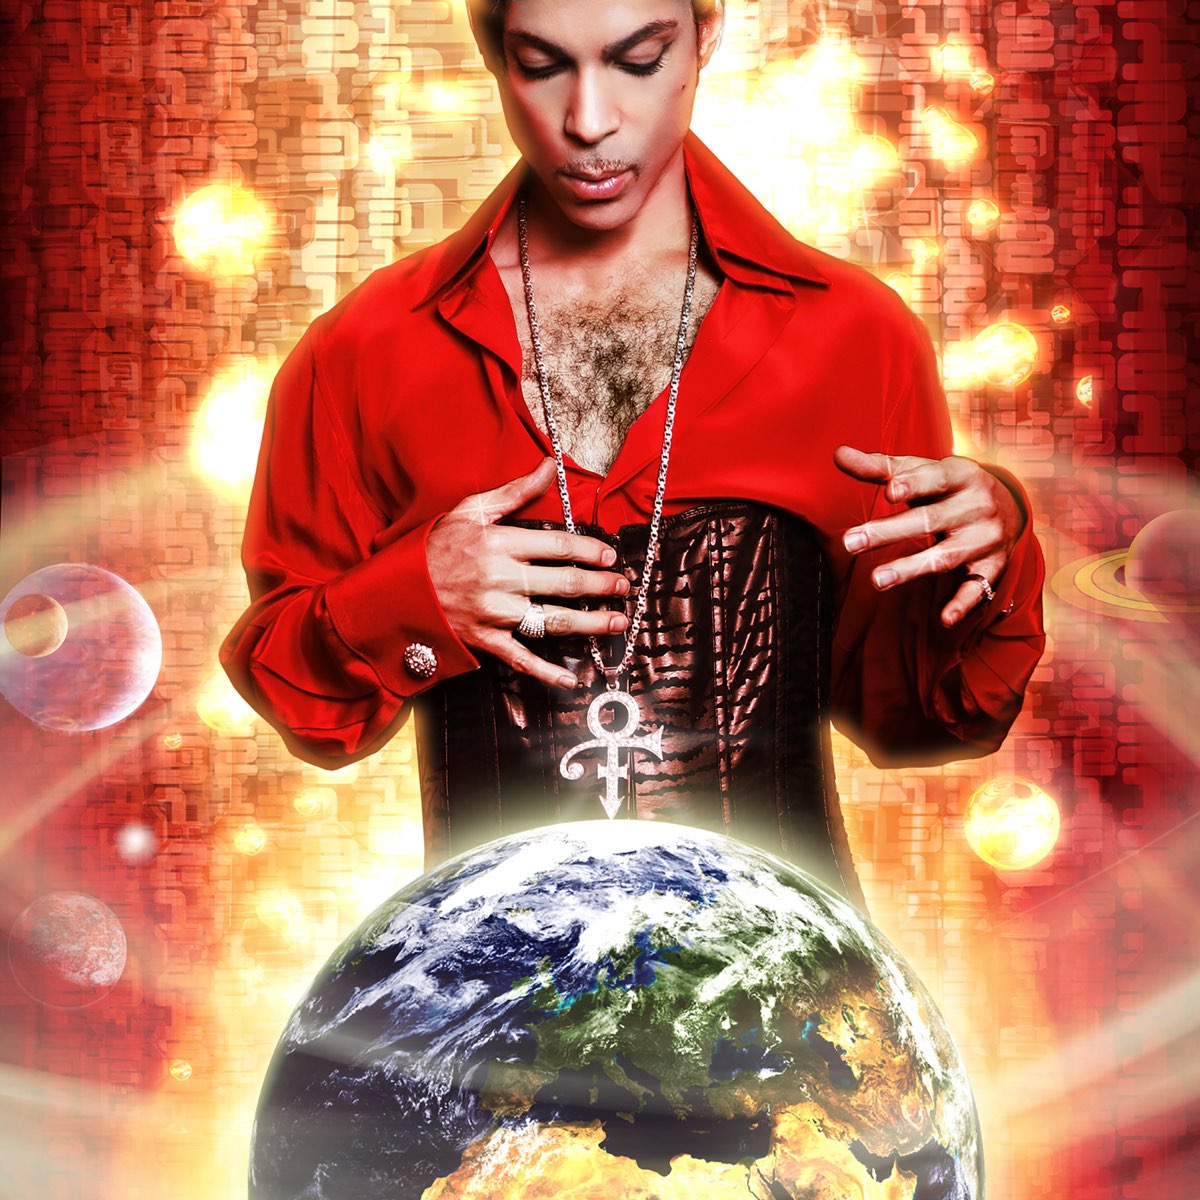 Prince — Guitar cover artwork